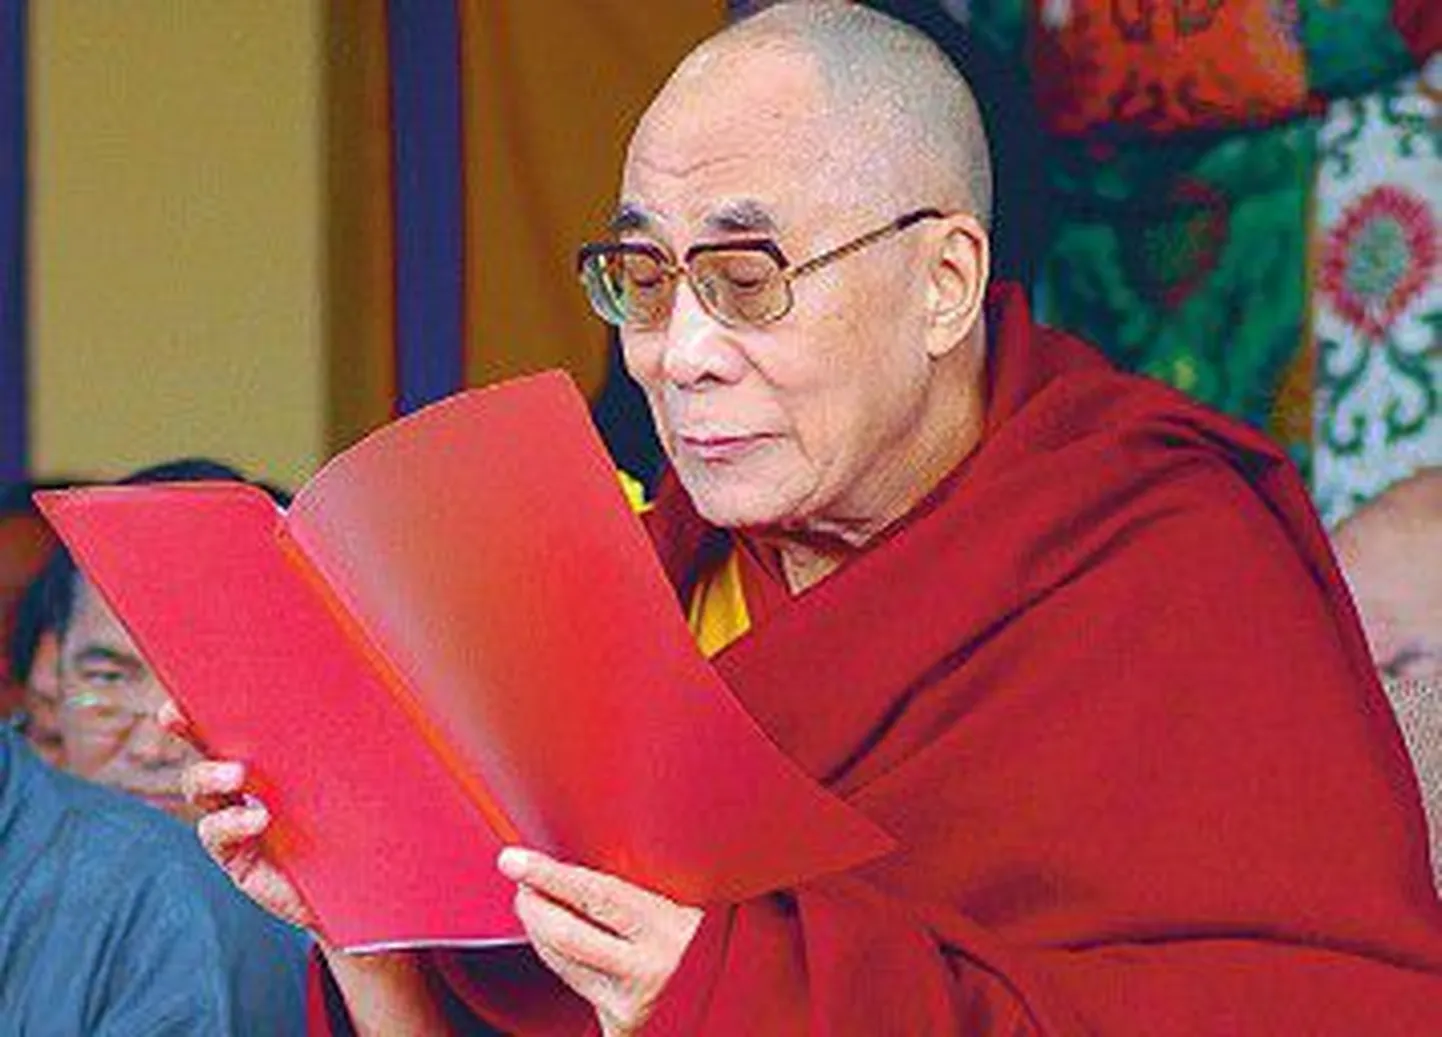 XIV Далай-лама Тэнцзин Гьямцхо занимает пост главы правительства Тибета в изгнании уже 62 года.